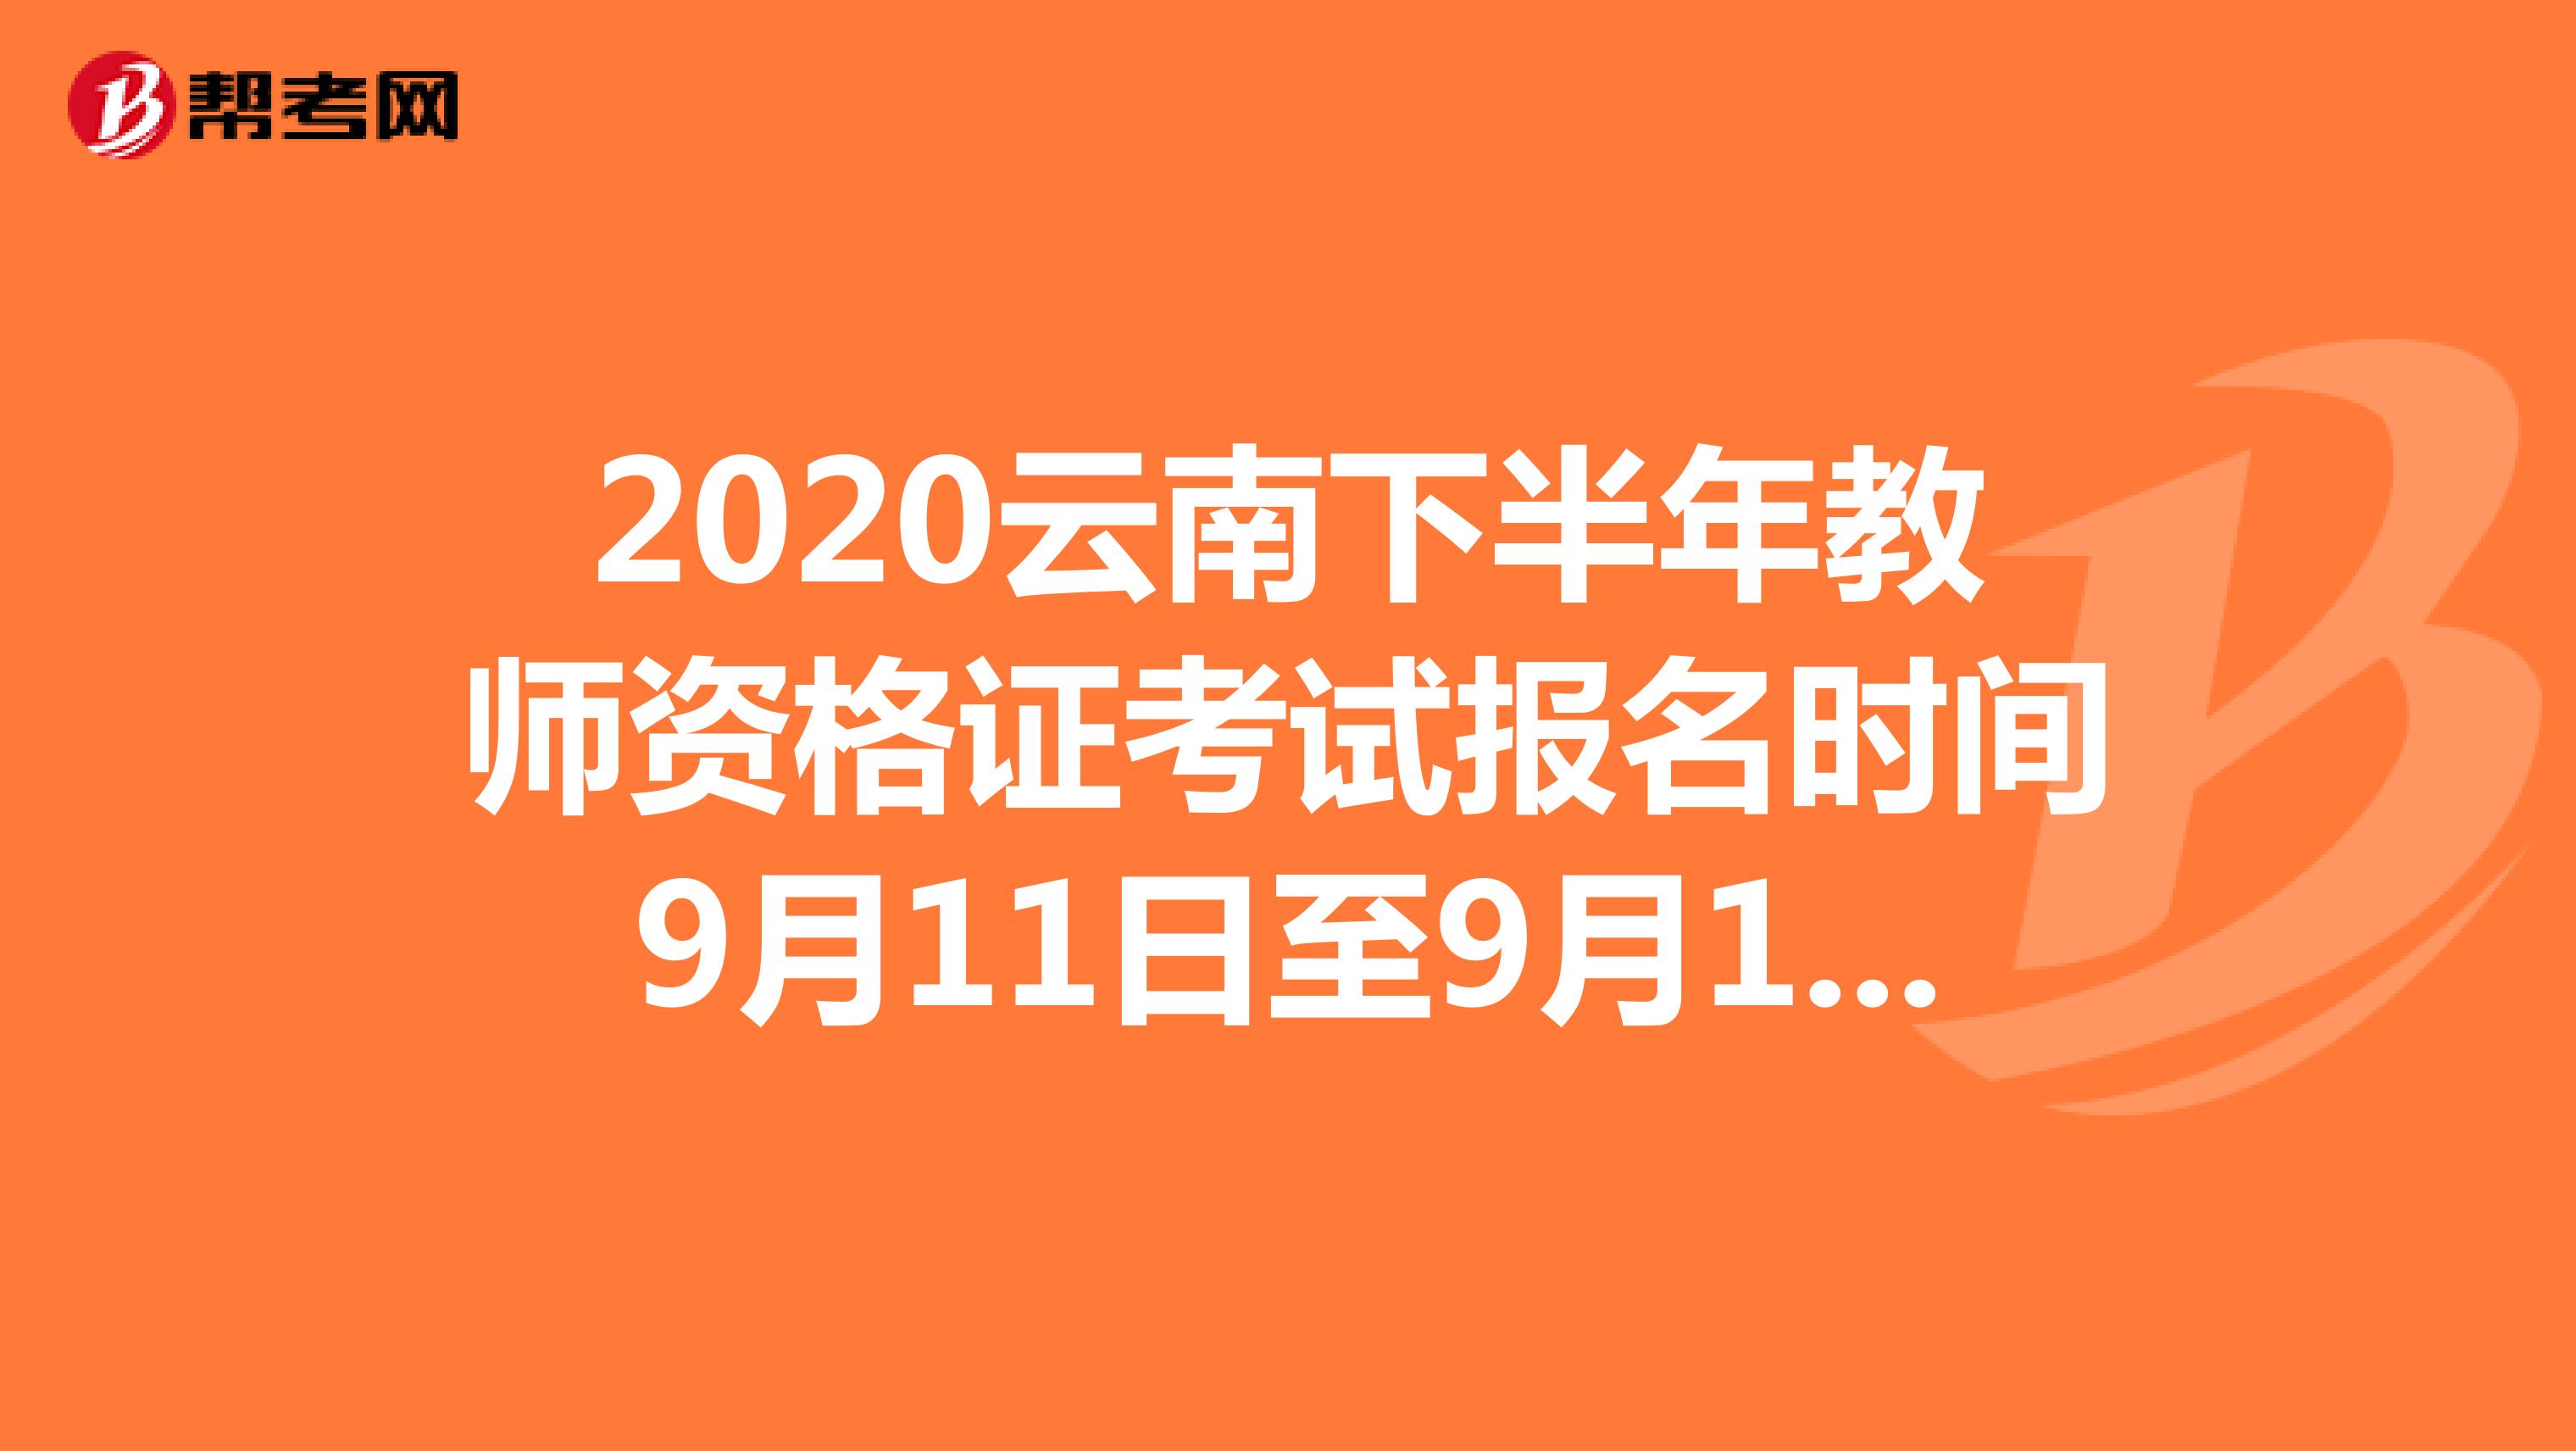 2020云南下半年教师资格证考试报名时间9月11日至9月14日